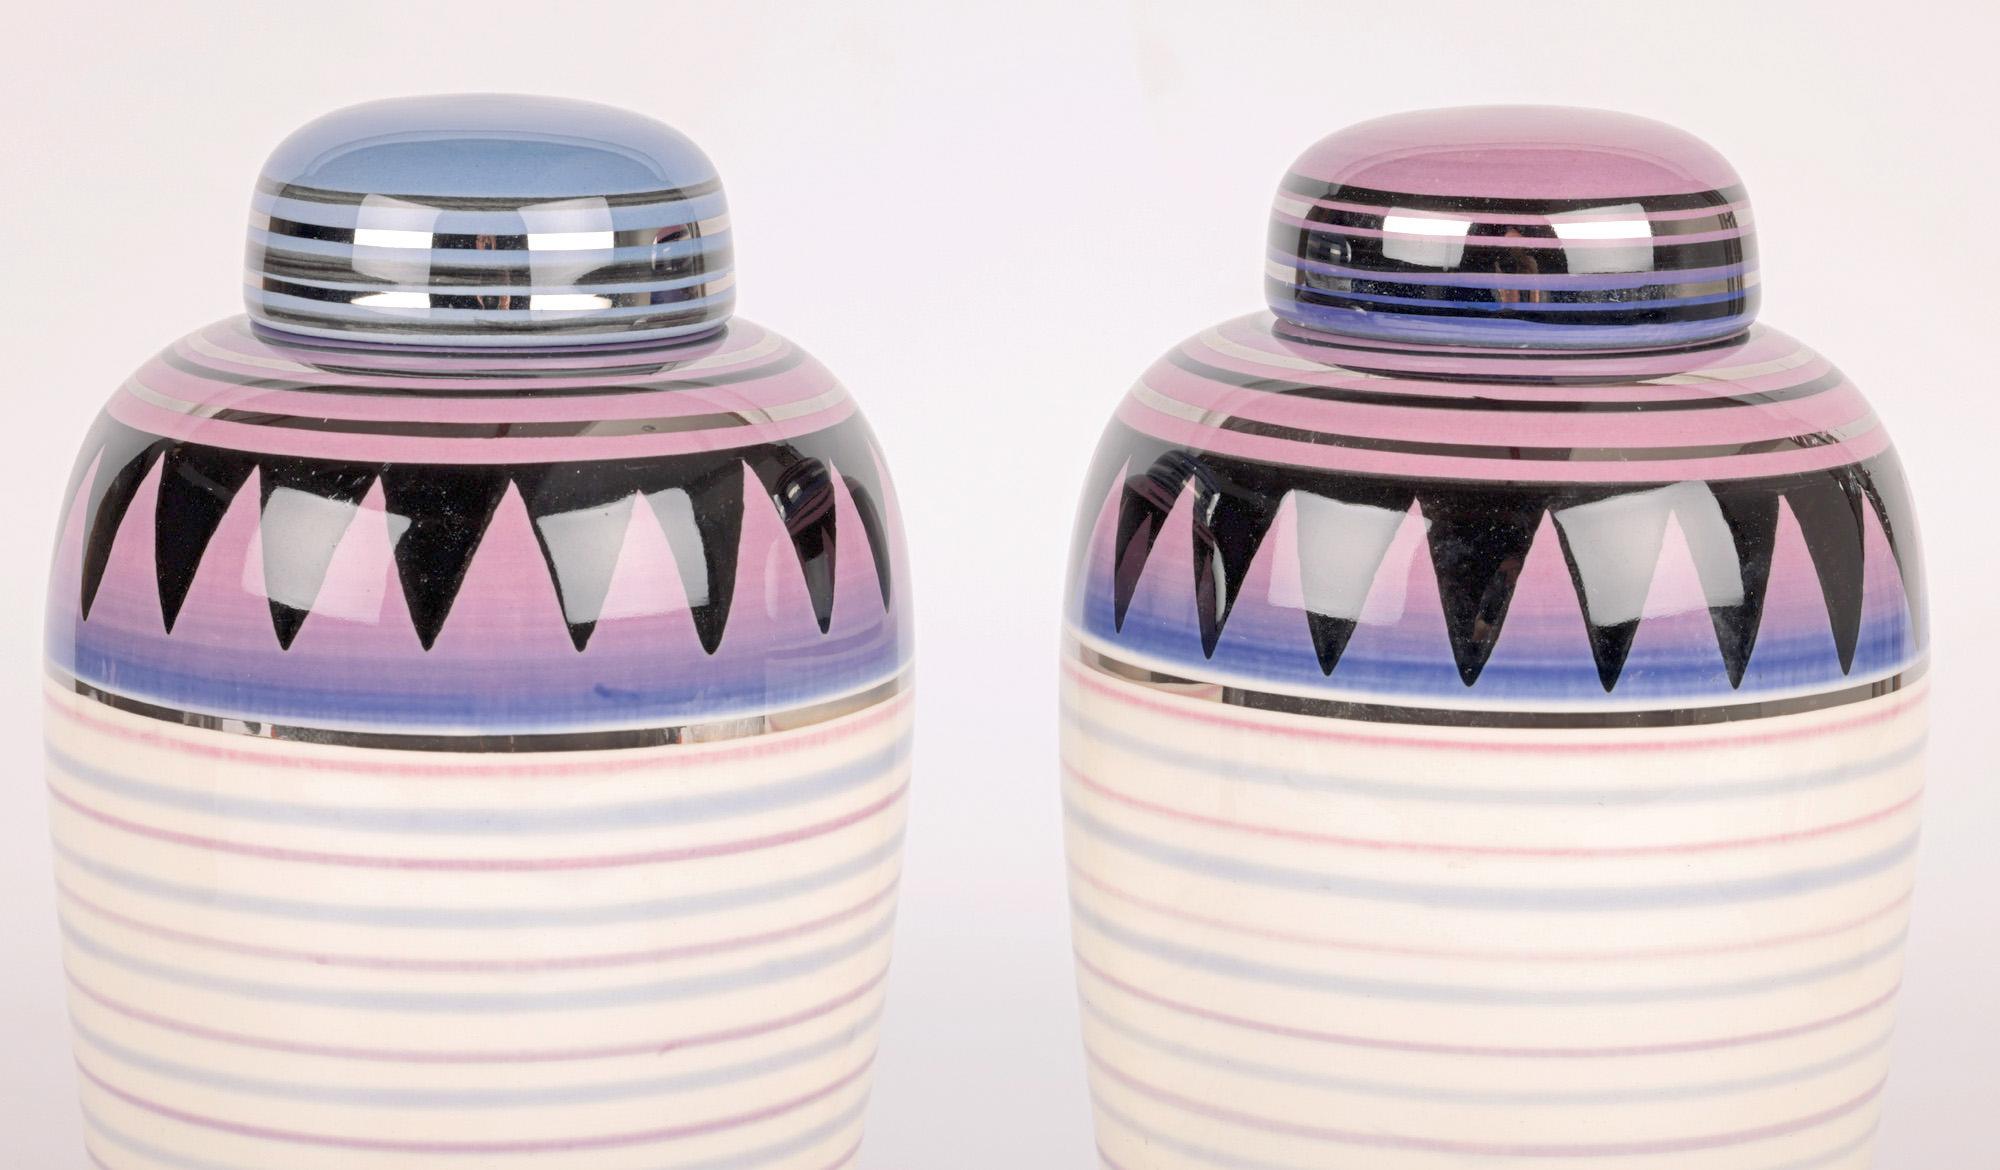 Ein sehr stilvolles Paar Moorland Pottery Keramik horizontalen linearen Muster Lüster Deckelvasen von Jon Plant und Adrian Tinsley und datiert 1999. 

Moorland Pottery mit Sitz in Chelsea Works in Burslem wurde 1960 gegründet und ist für die